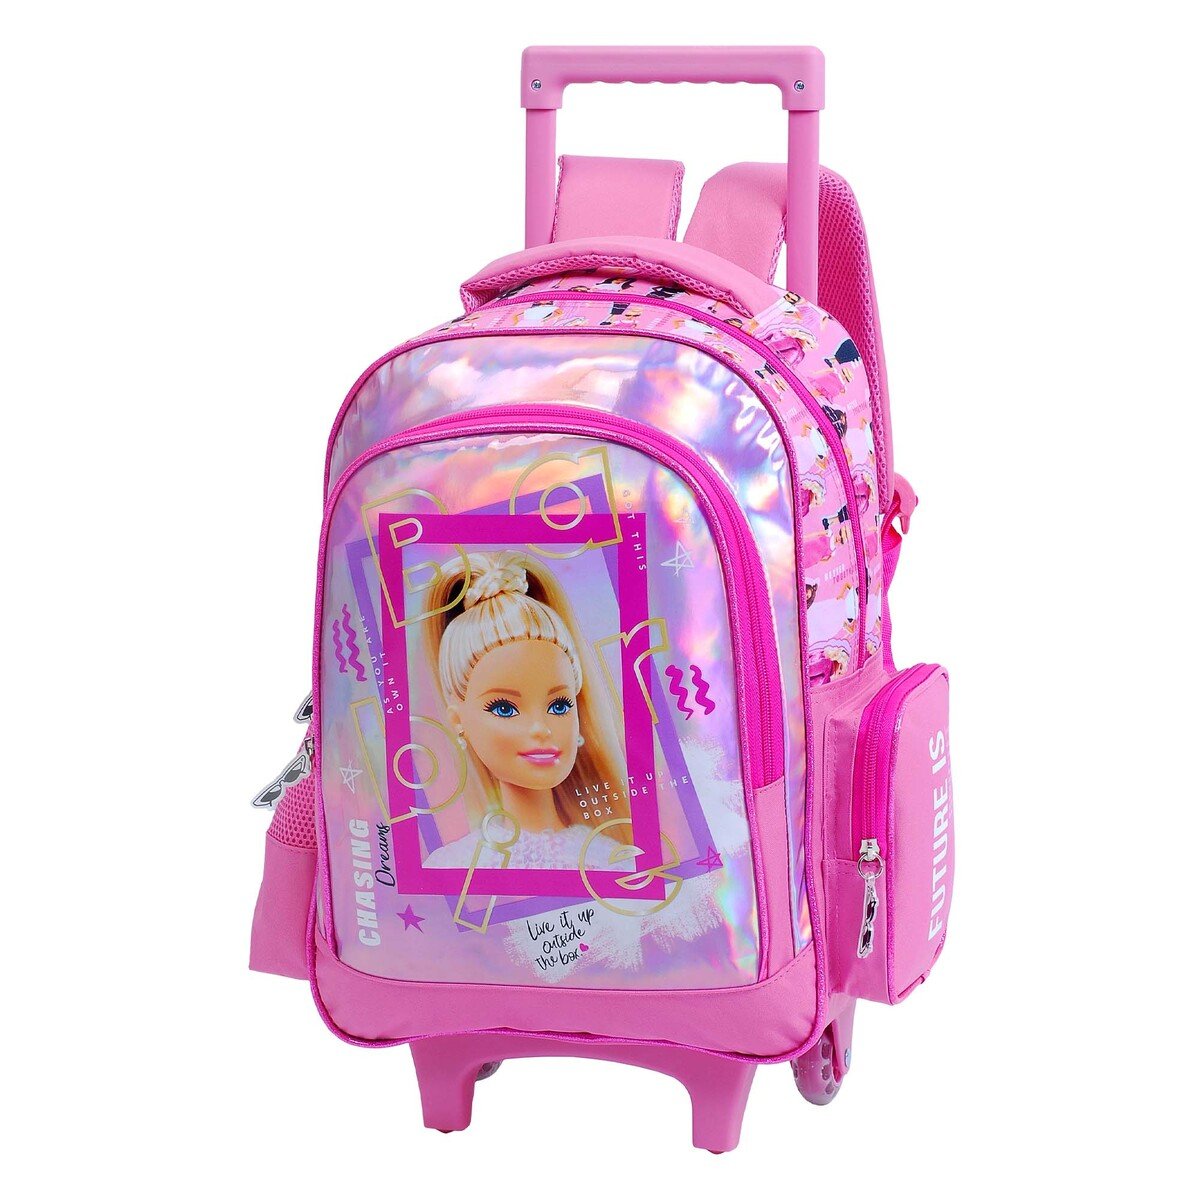 Pre-Girls Trolley Bag - Pink